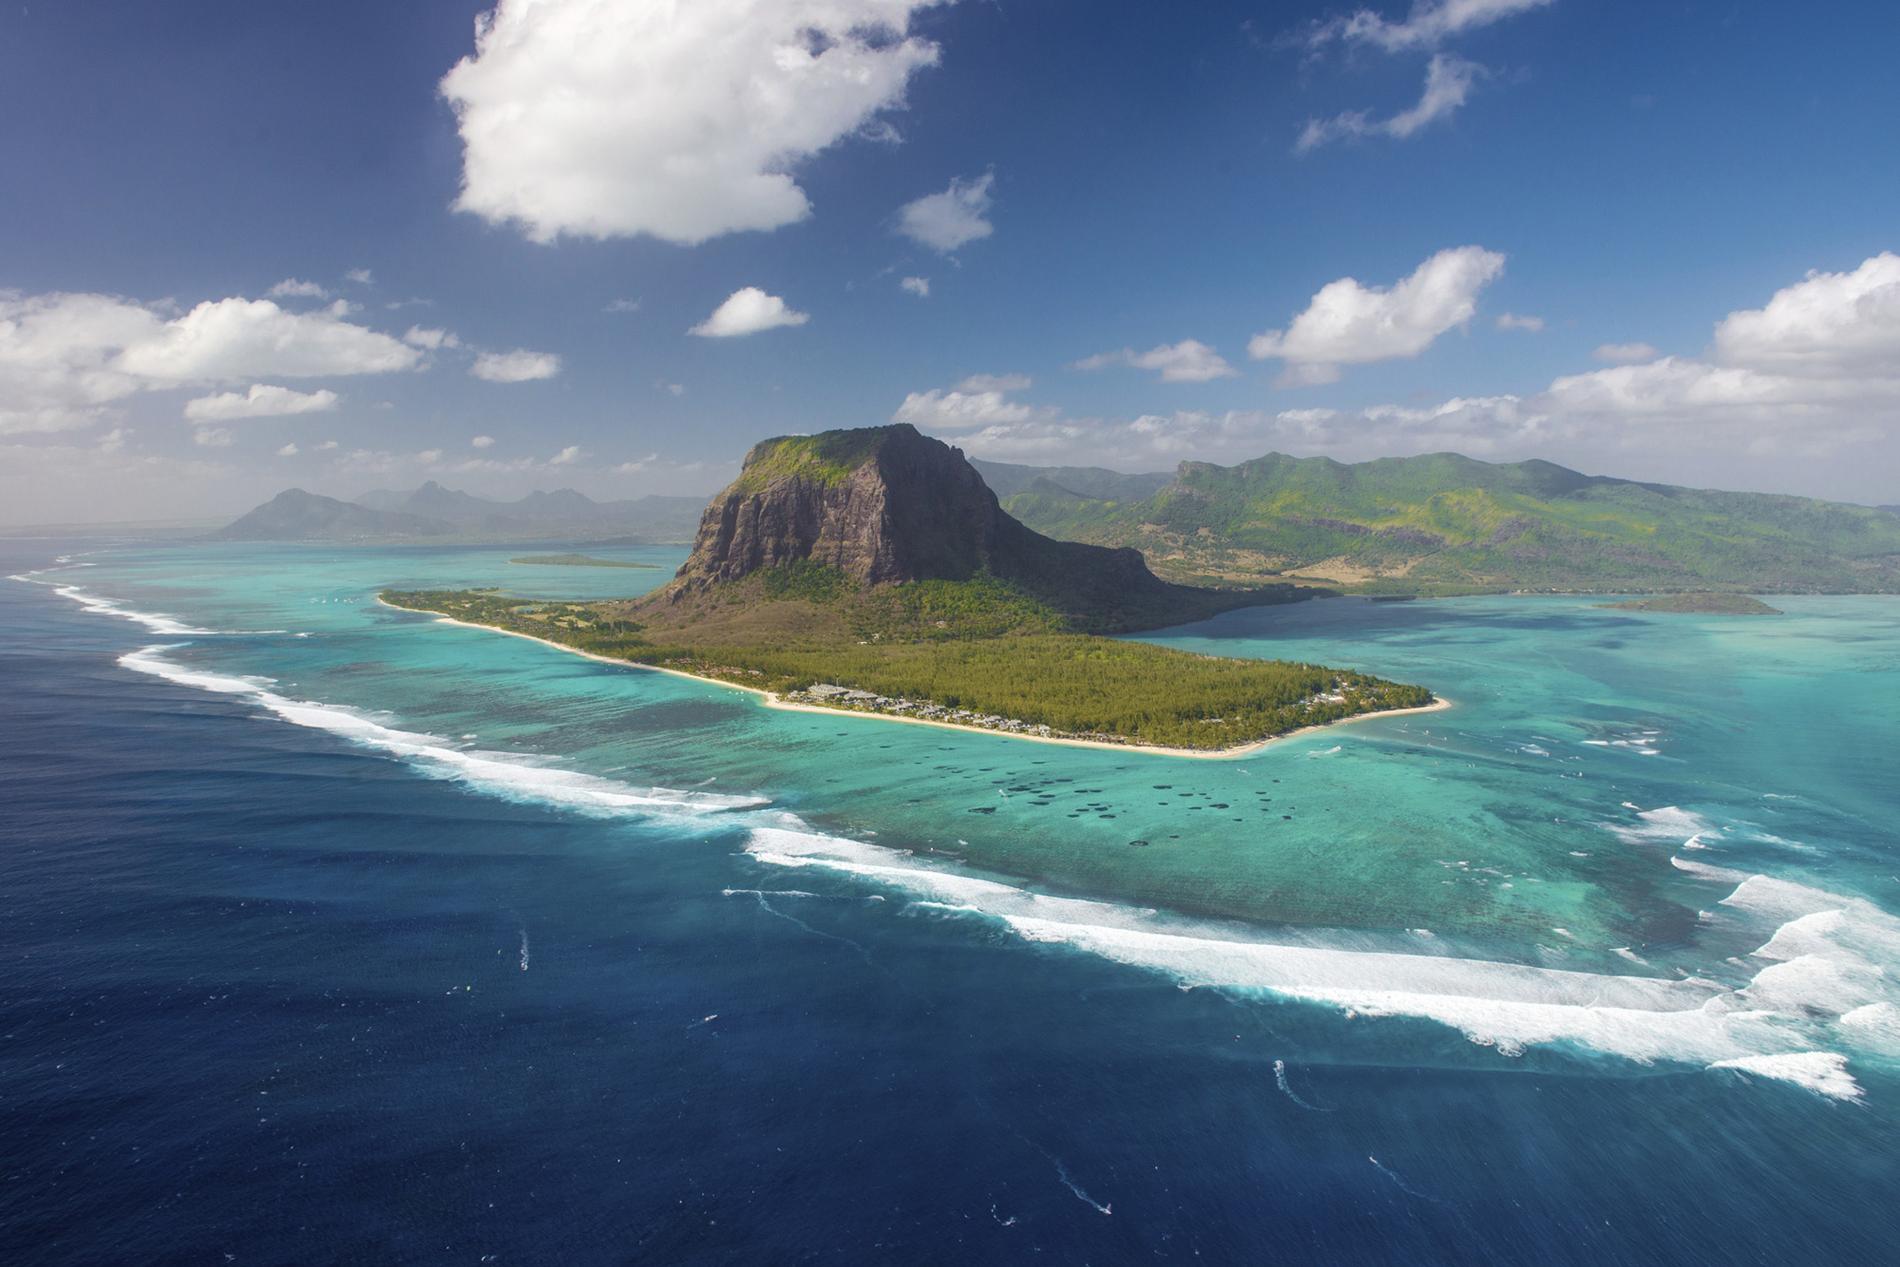 7) Mauritius.